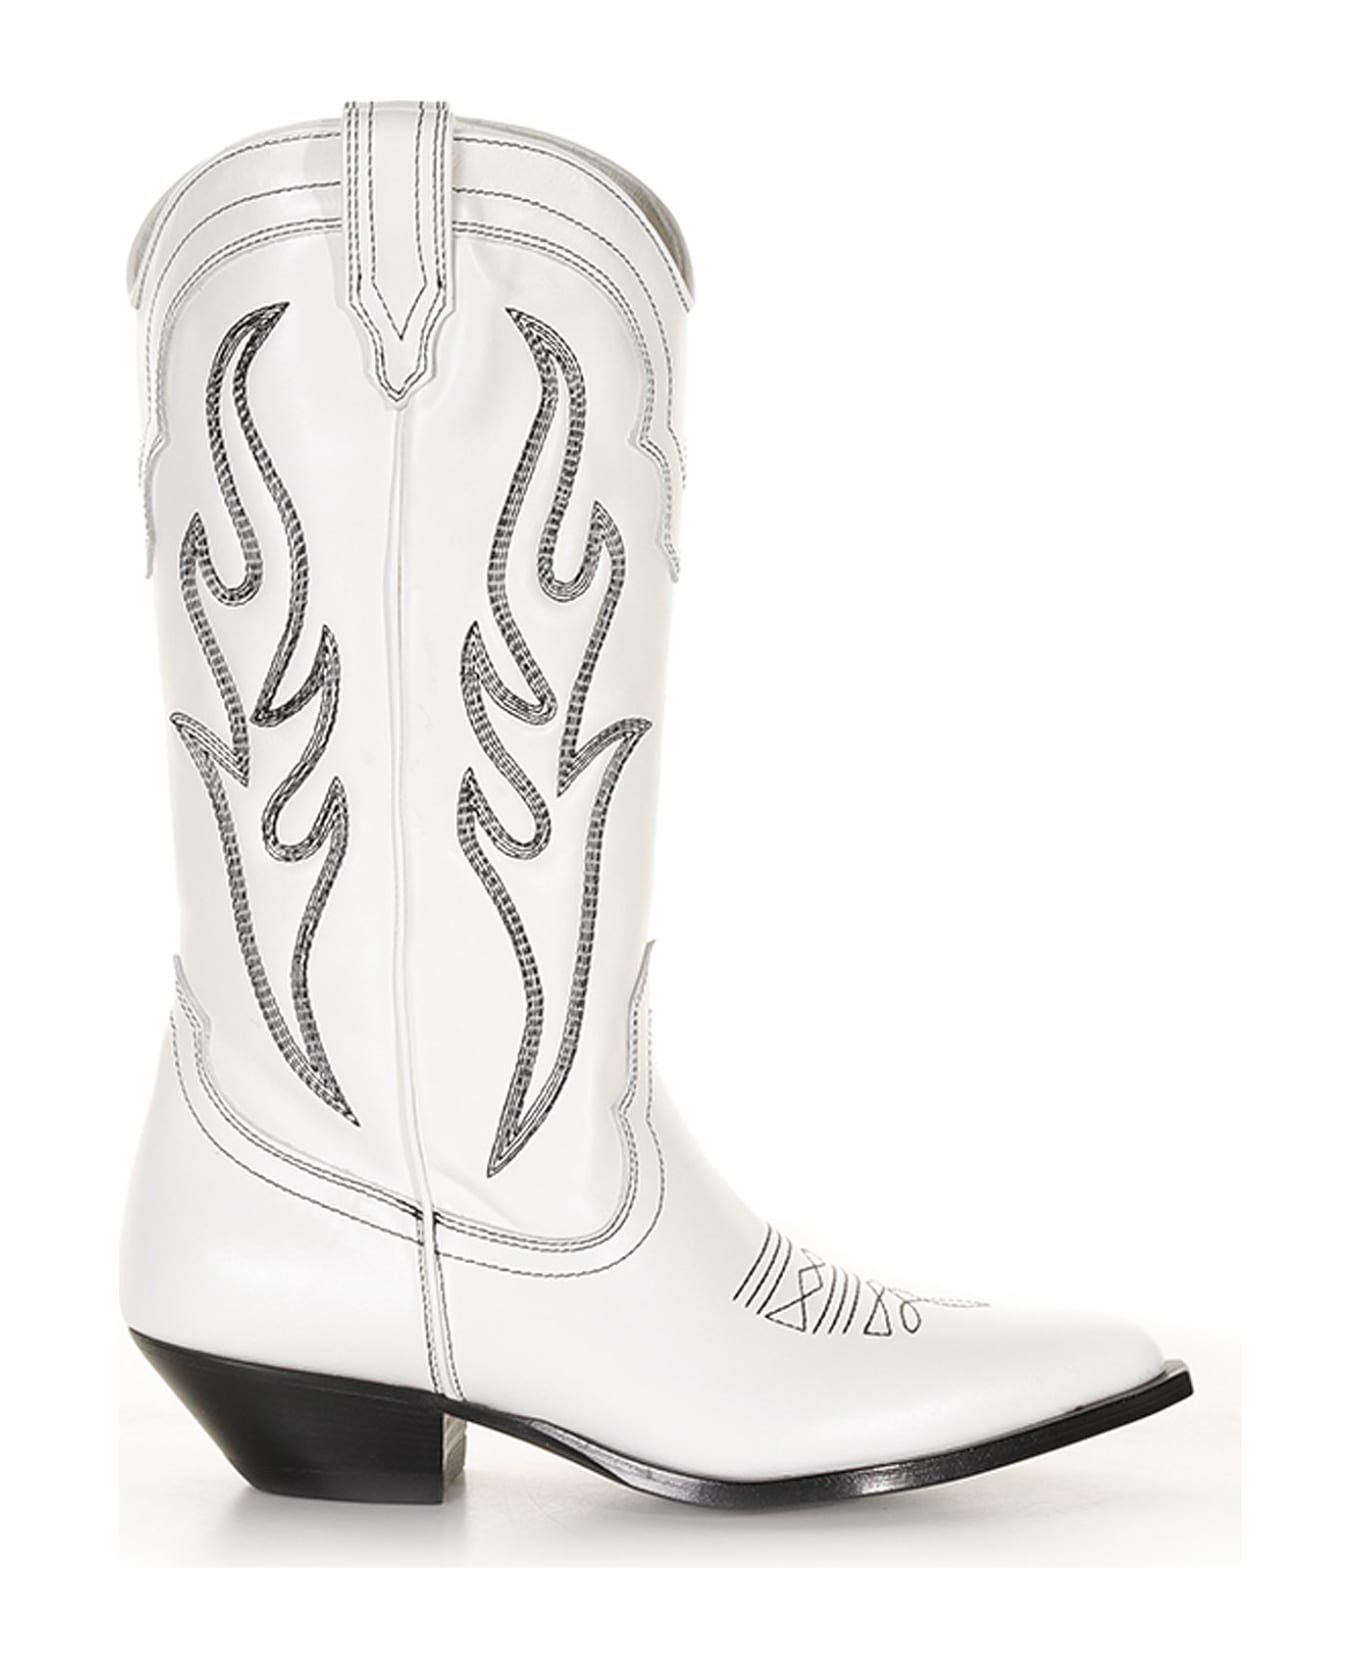 Sonora White Santa Fe Texan Boot In Cowboy Style - WHITE BLACK